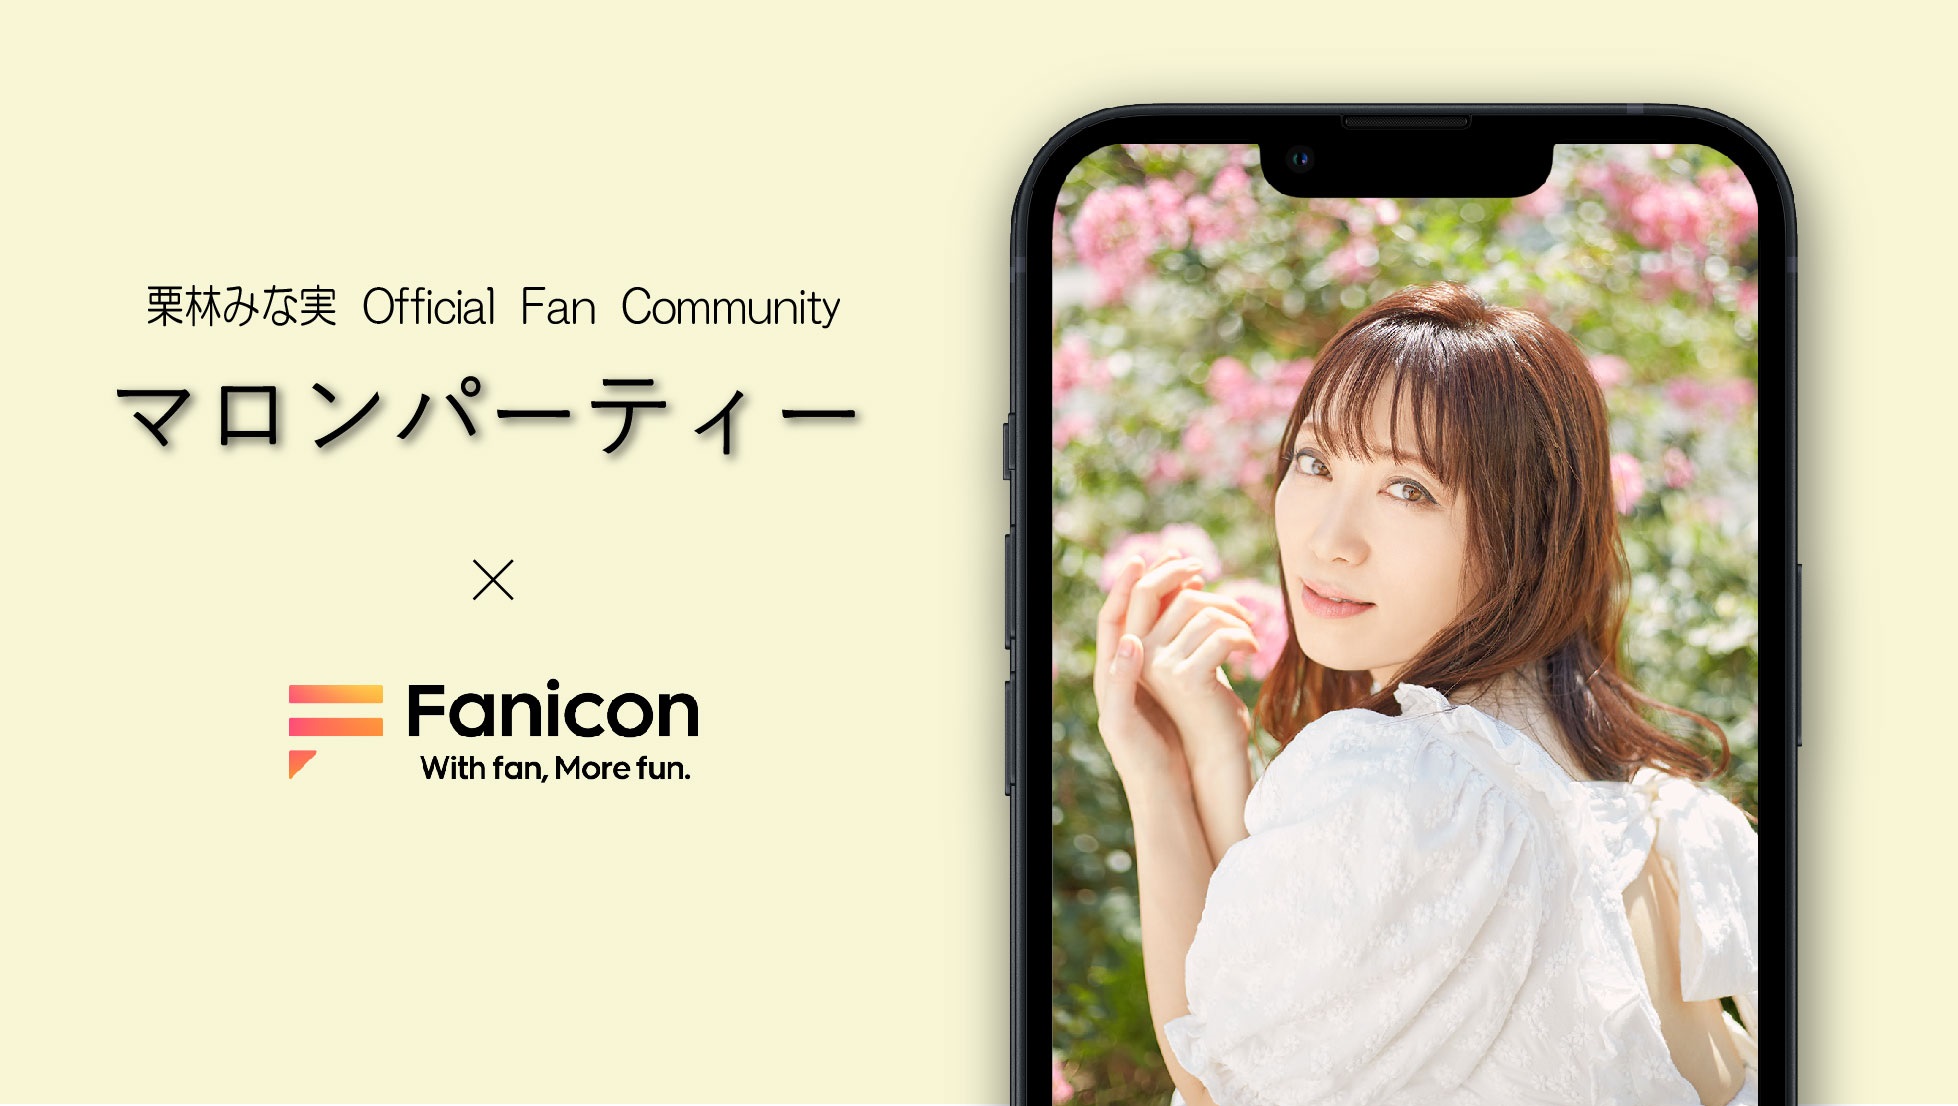 会員制ファンコミュニティプラットフォーム「Fanicon」に栗林みな実の公式ファンコミュニティ【マロンパーティー】を開設